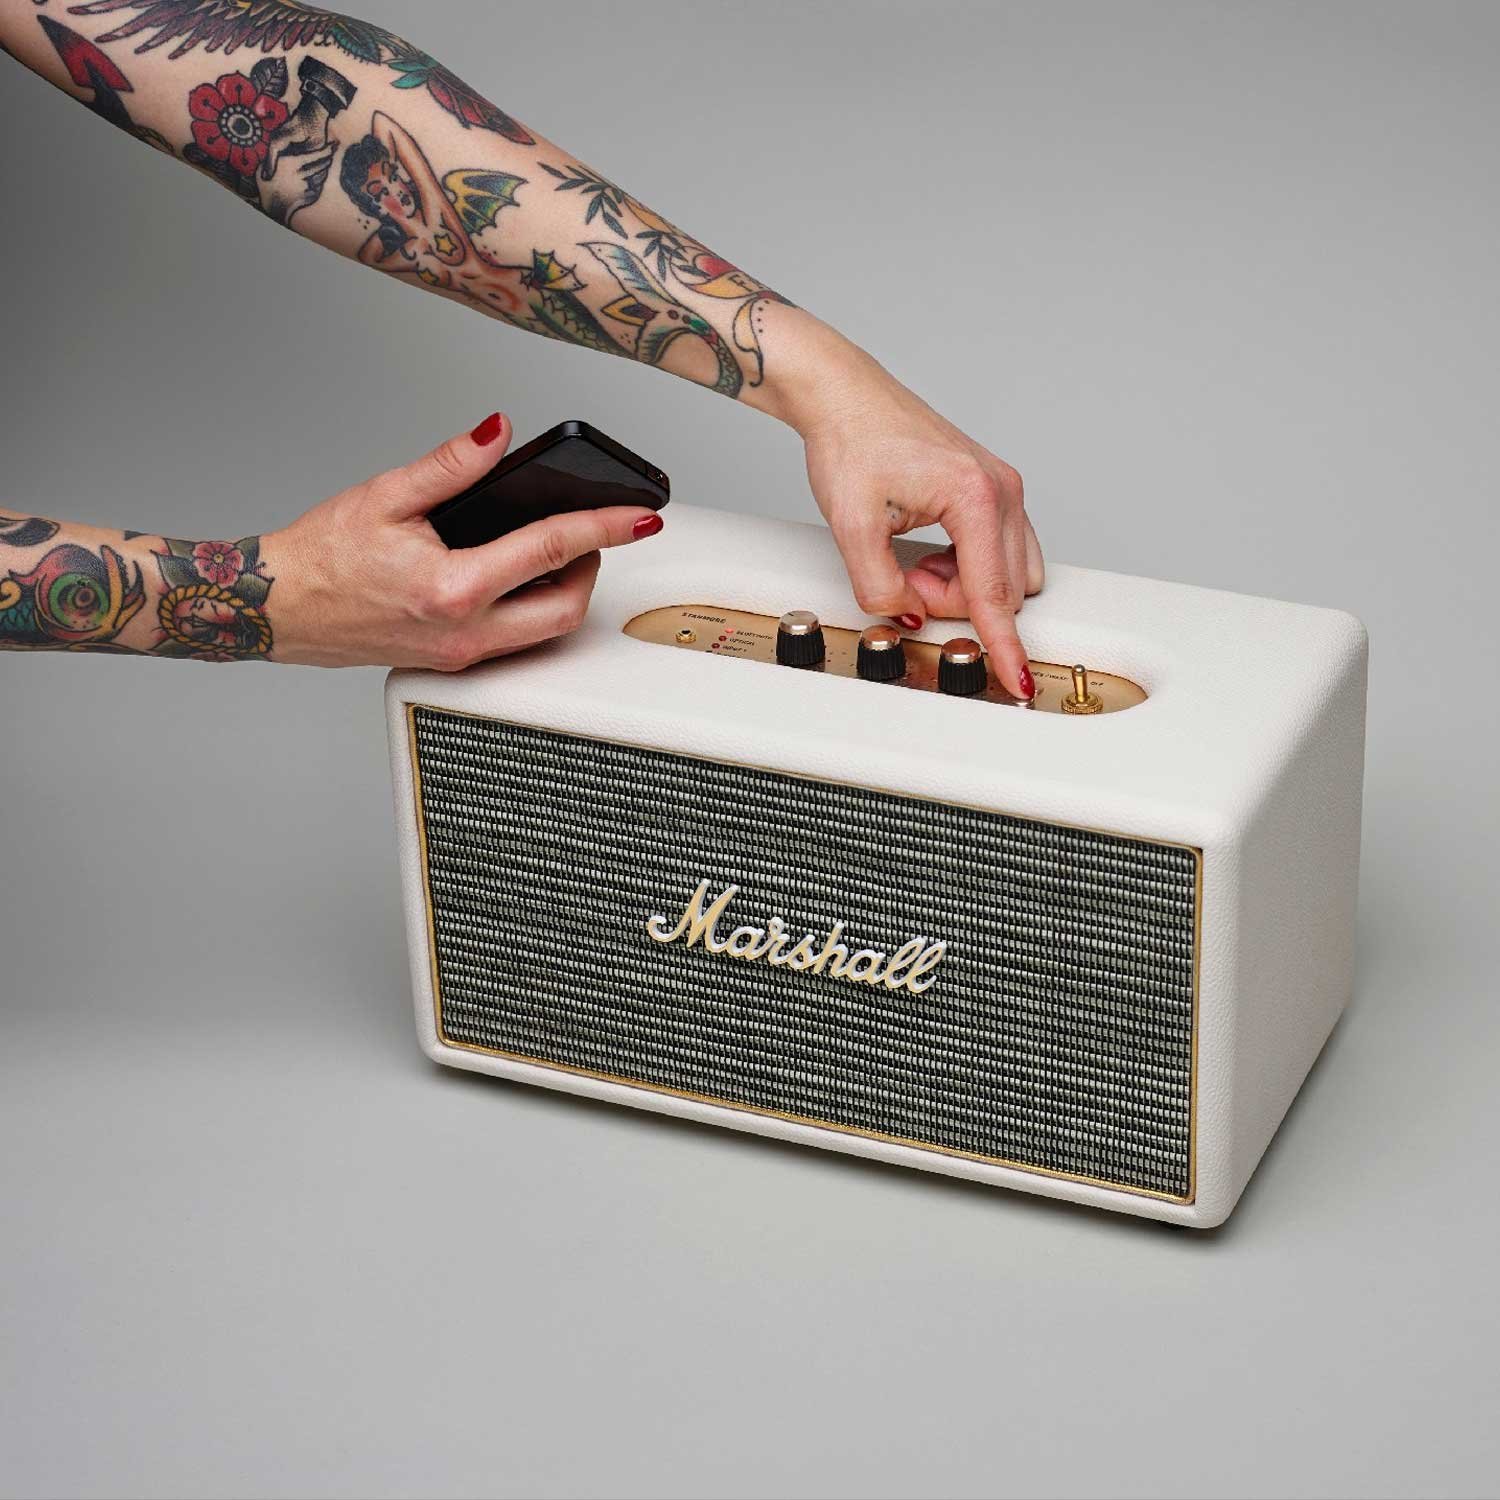 Marshall Bluetooth Speaker